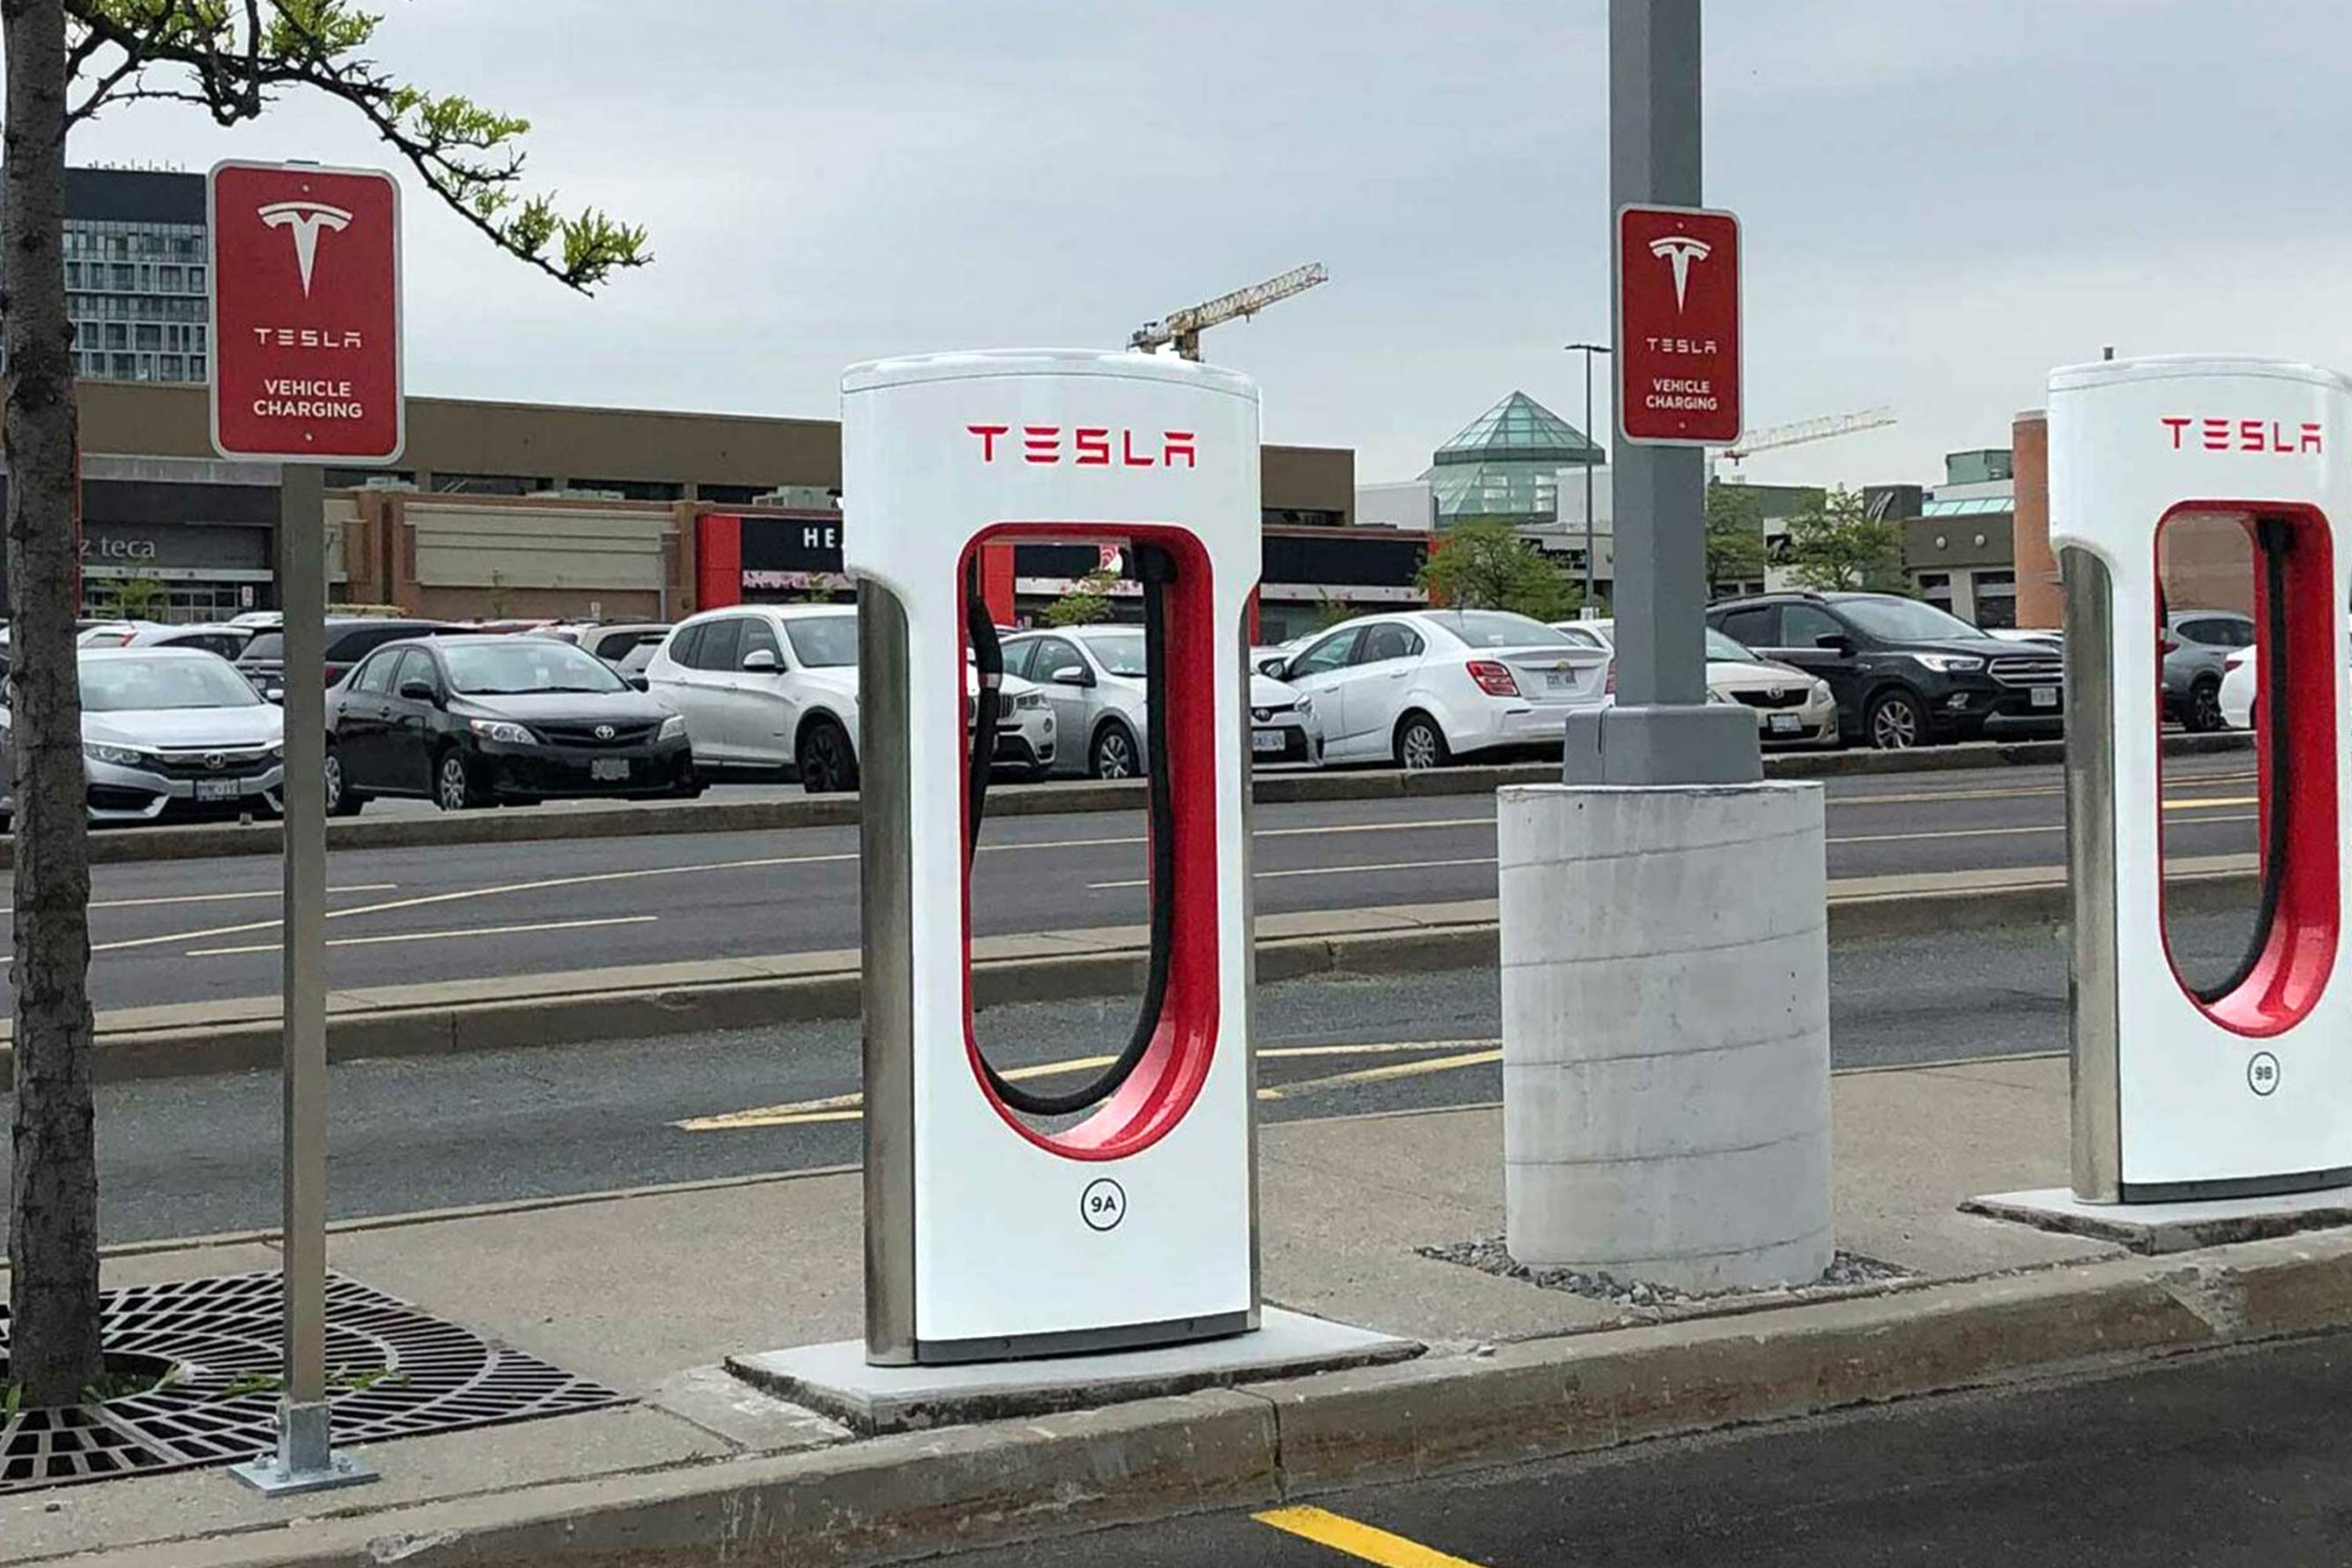 جایگاه شارژ جدید خودروهای تسلا در کانادا تخریب شد